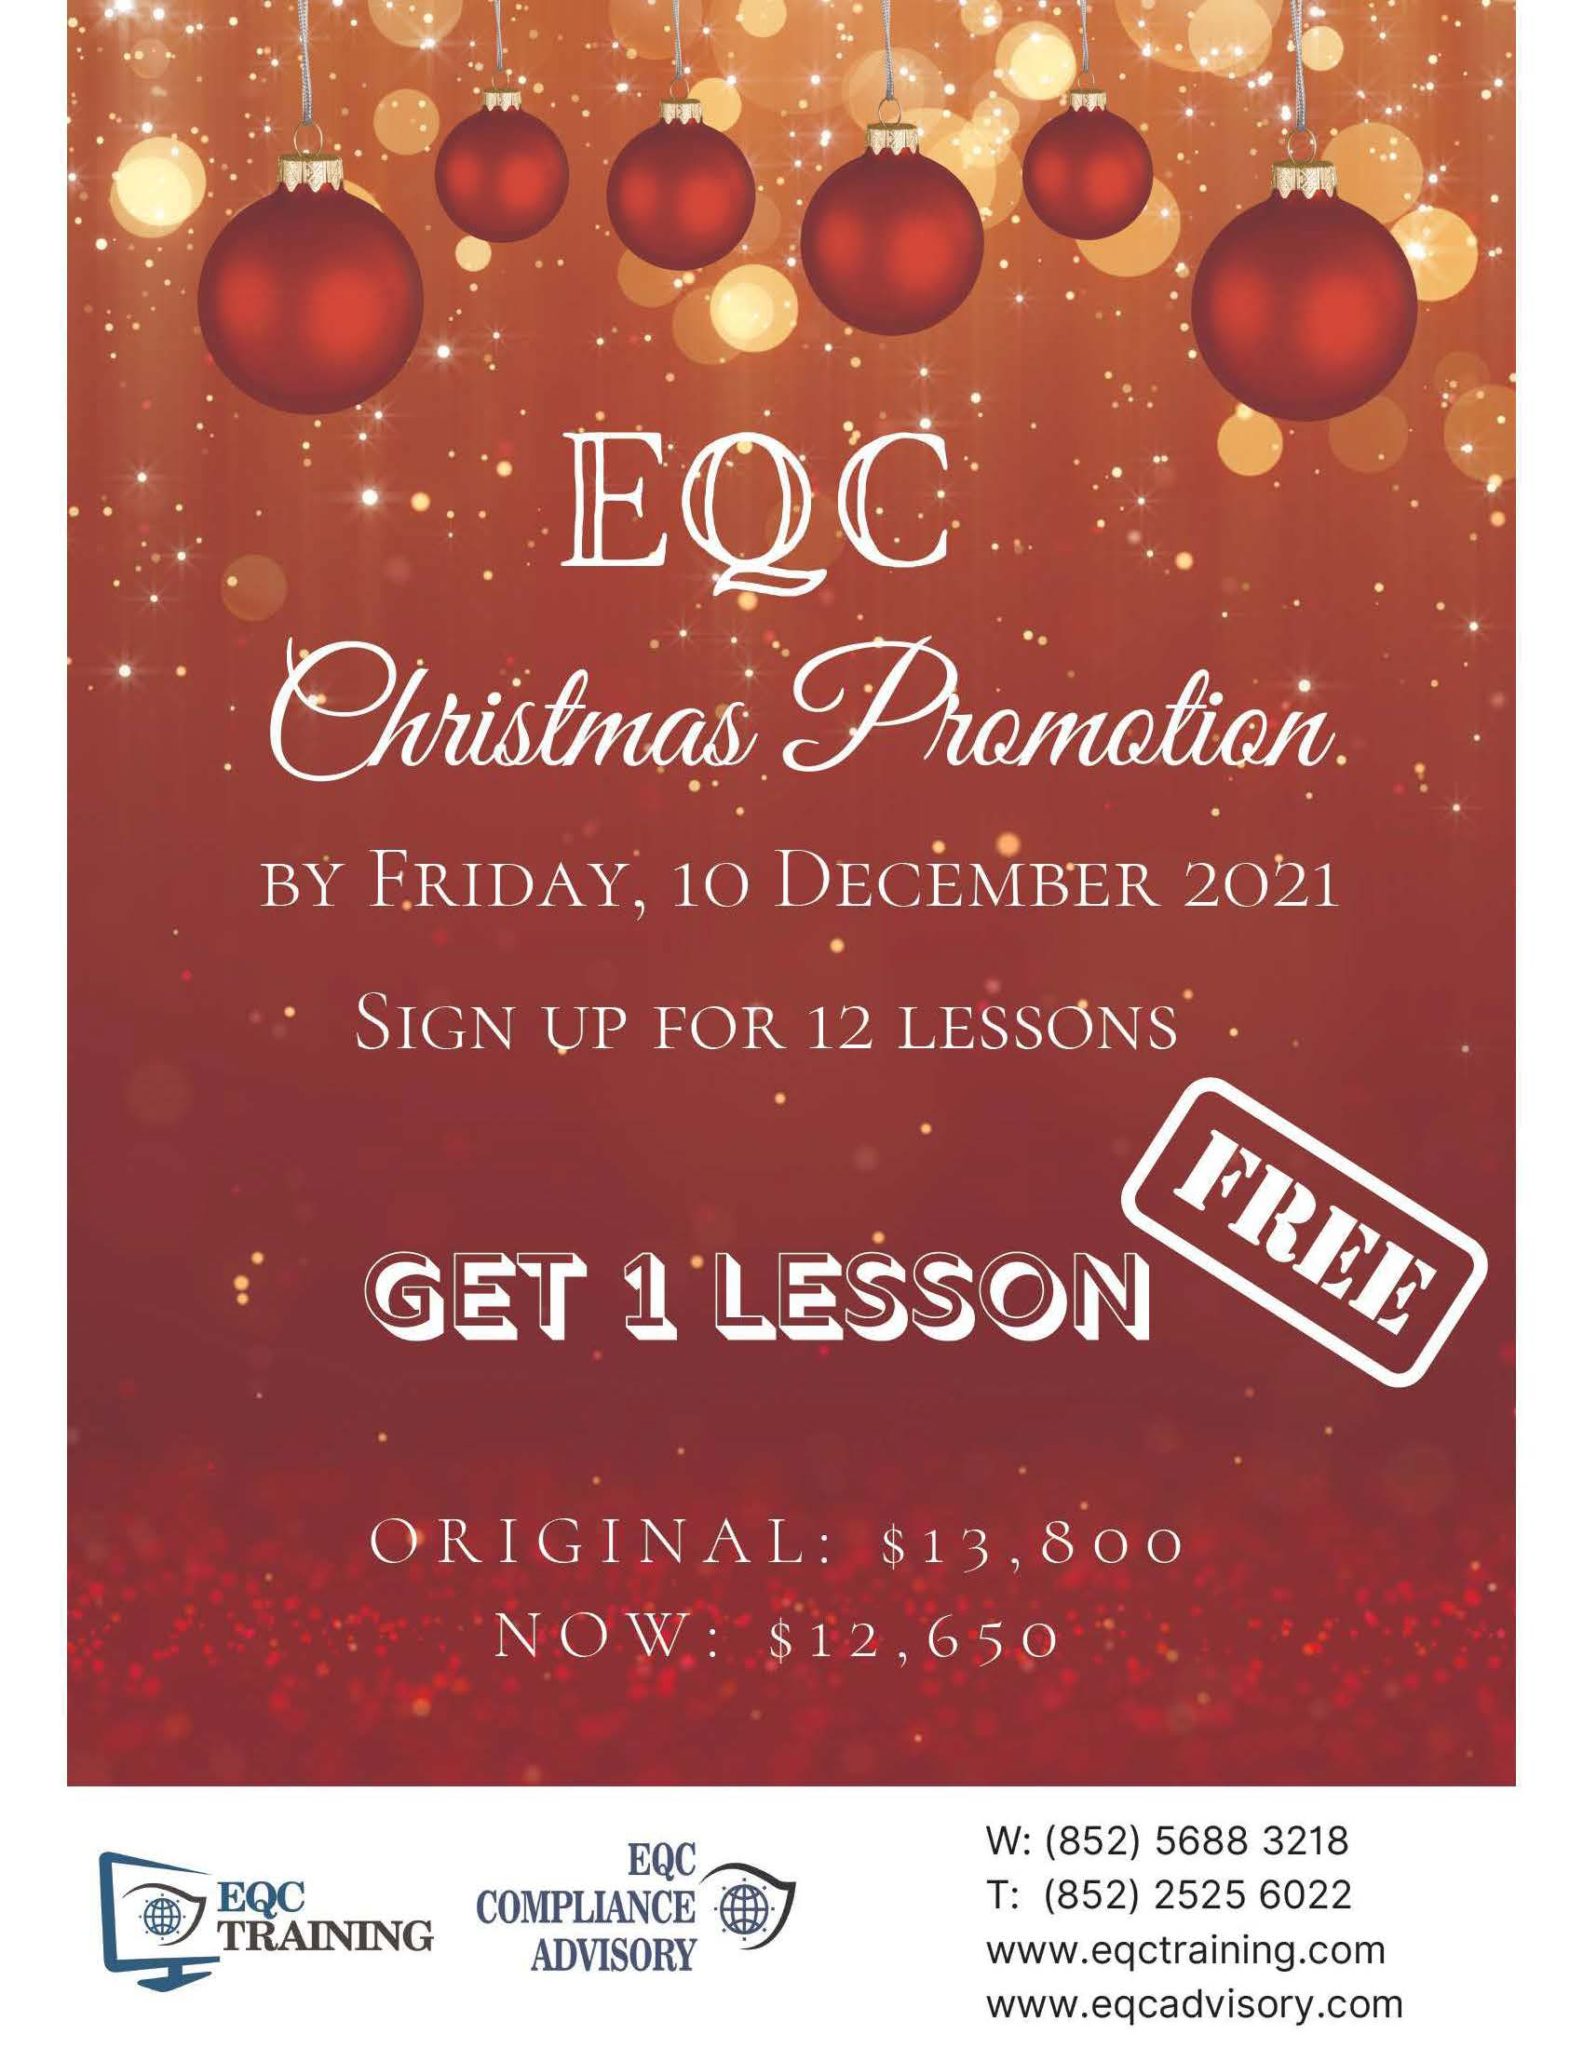 Week 1 Christmas Training Promotion